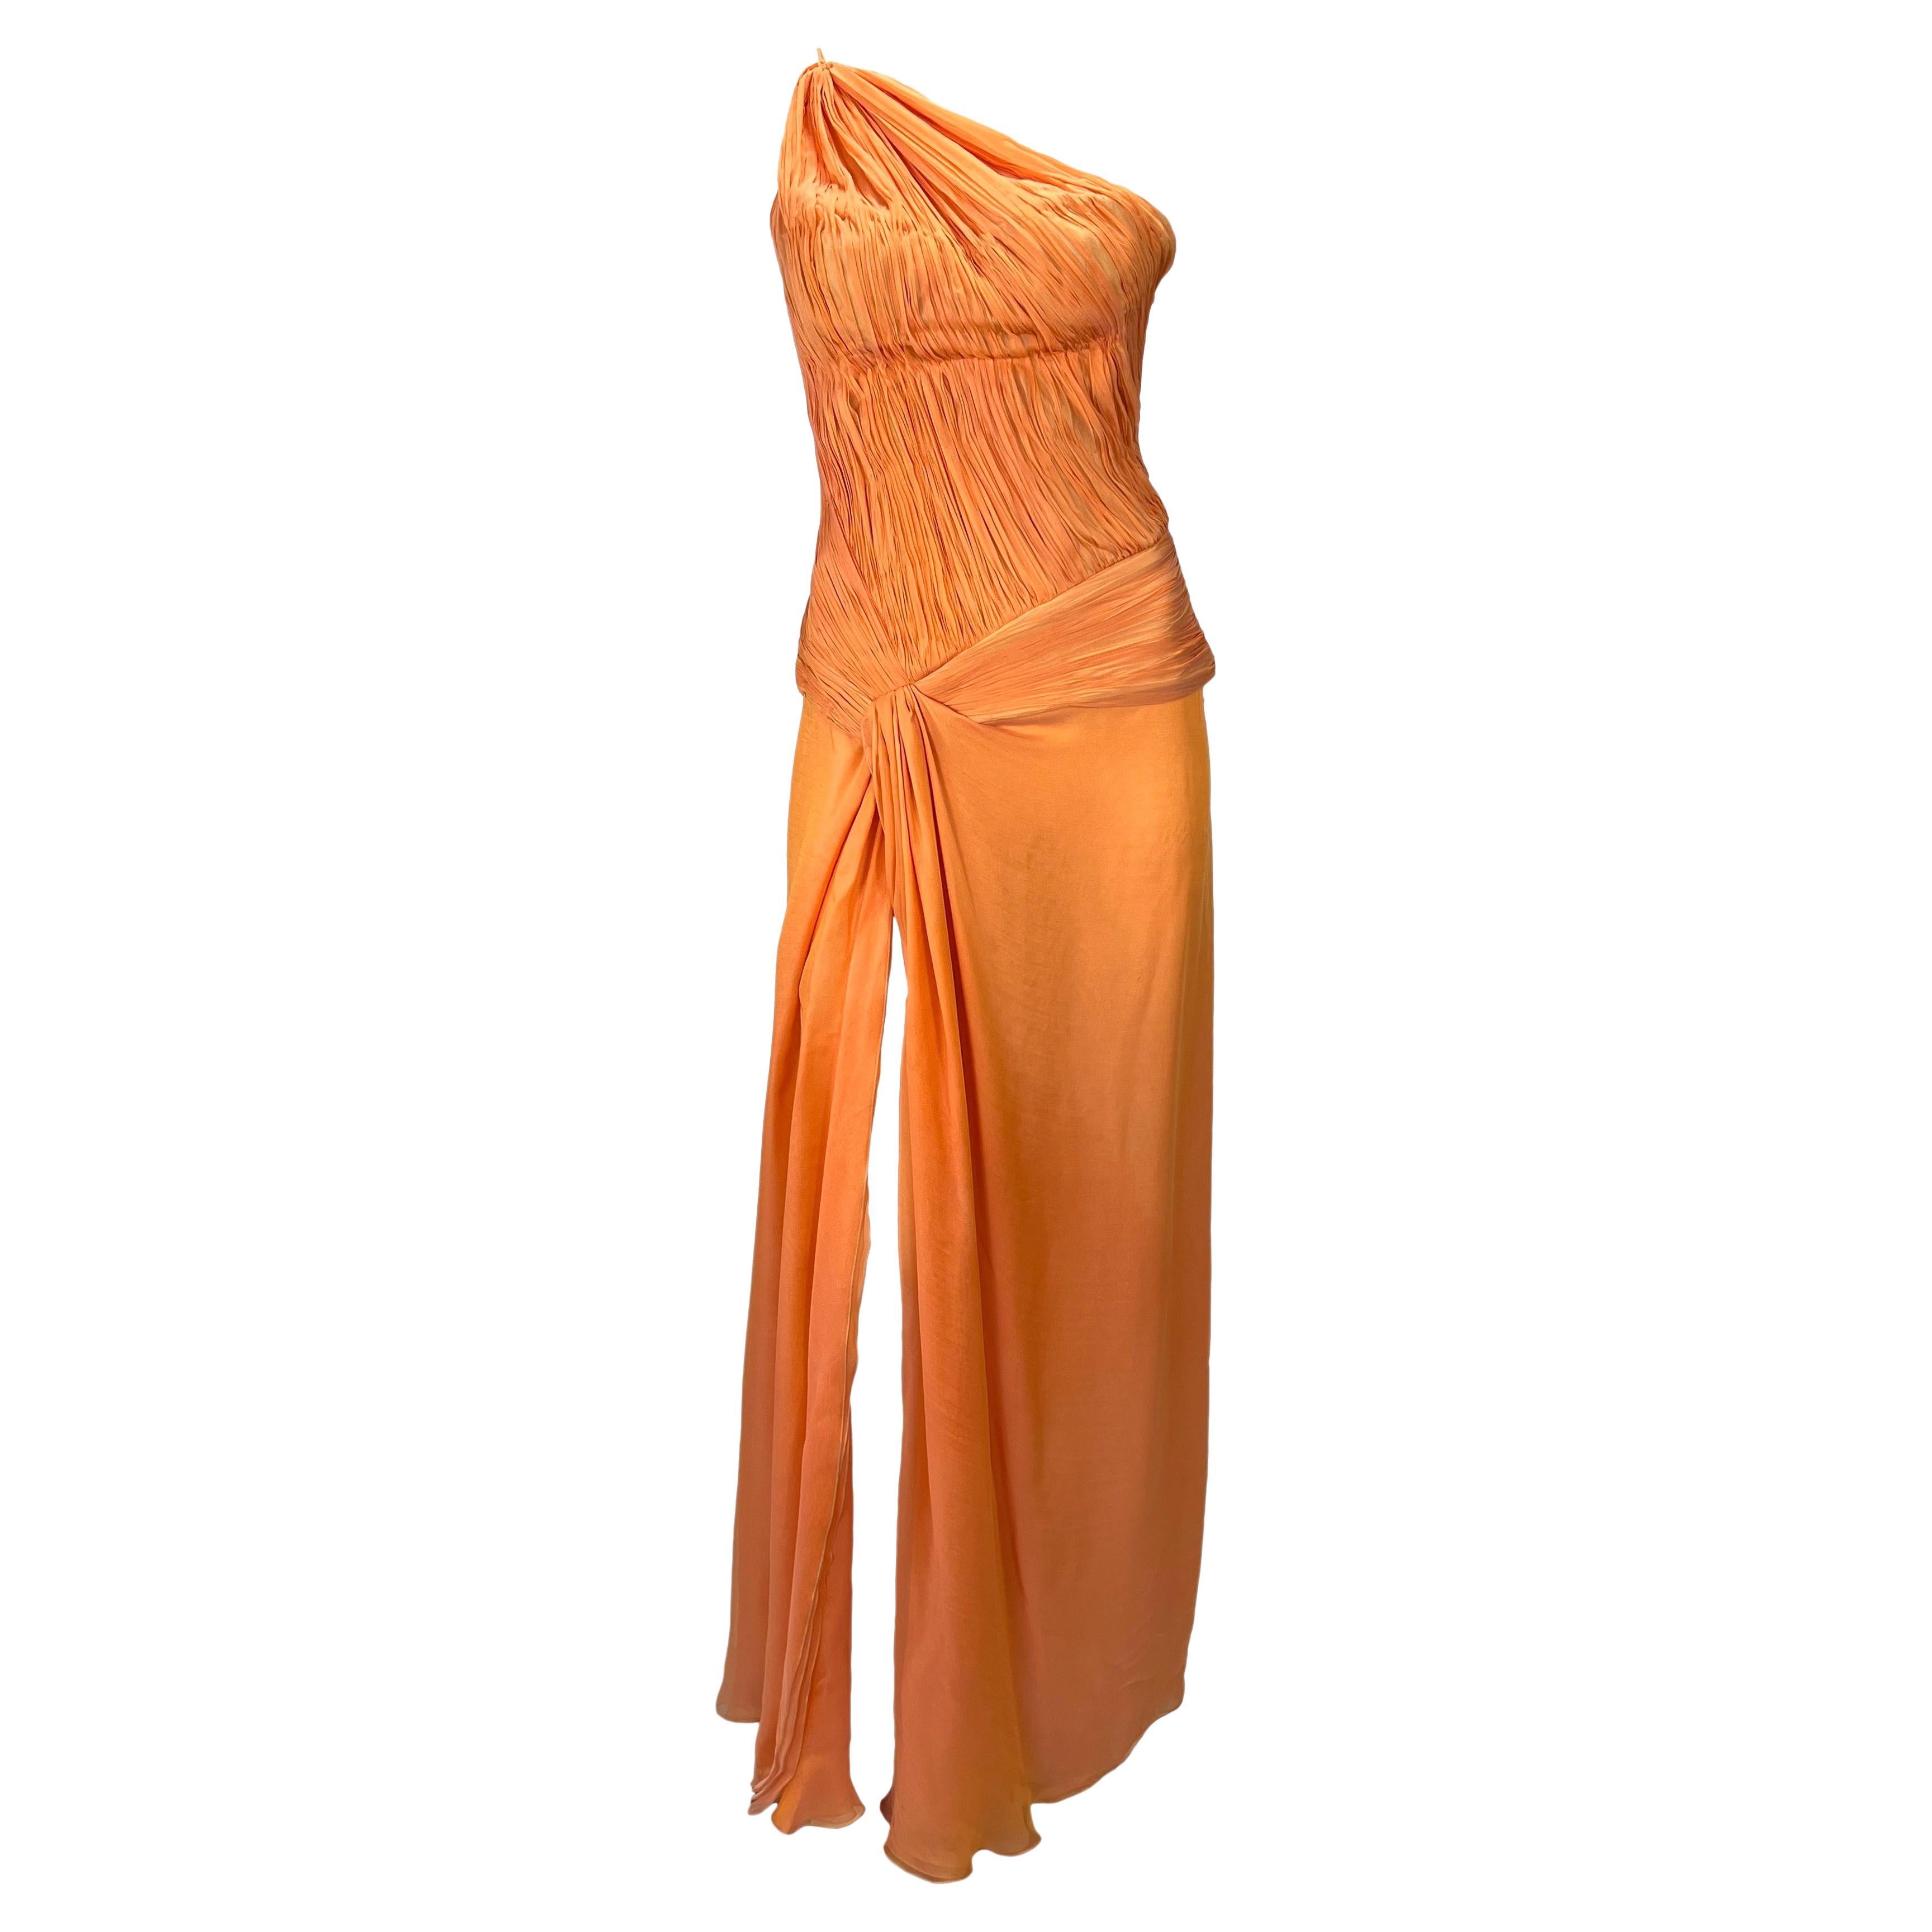 F/S 2005 Roberto Cavalli Asymmetrisches Kleid mit hohem Schlitz aus geraffter orangefarbener Seide und Chiffon